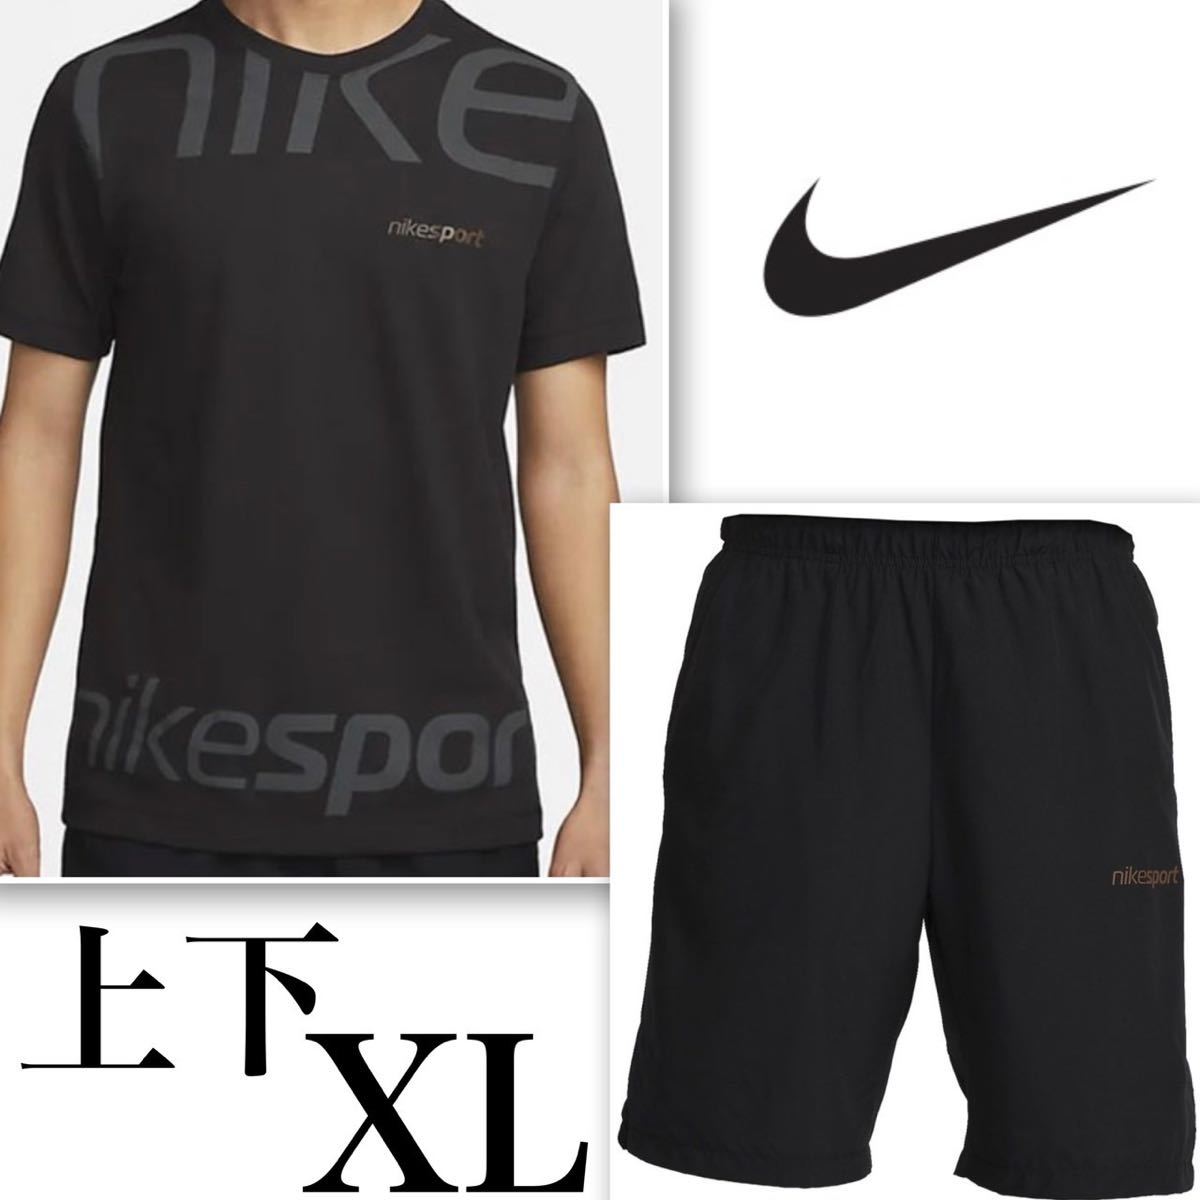 【新品 正規品】ナイキ NIKE Tシャツ ハーフパンツ 上下セット XL ビックスウッシュ nike sport 黒 ブラック セットアップ